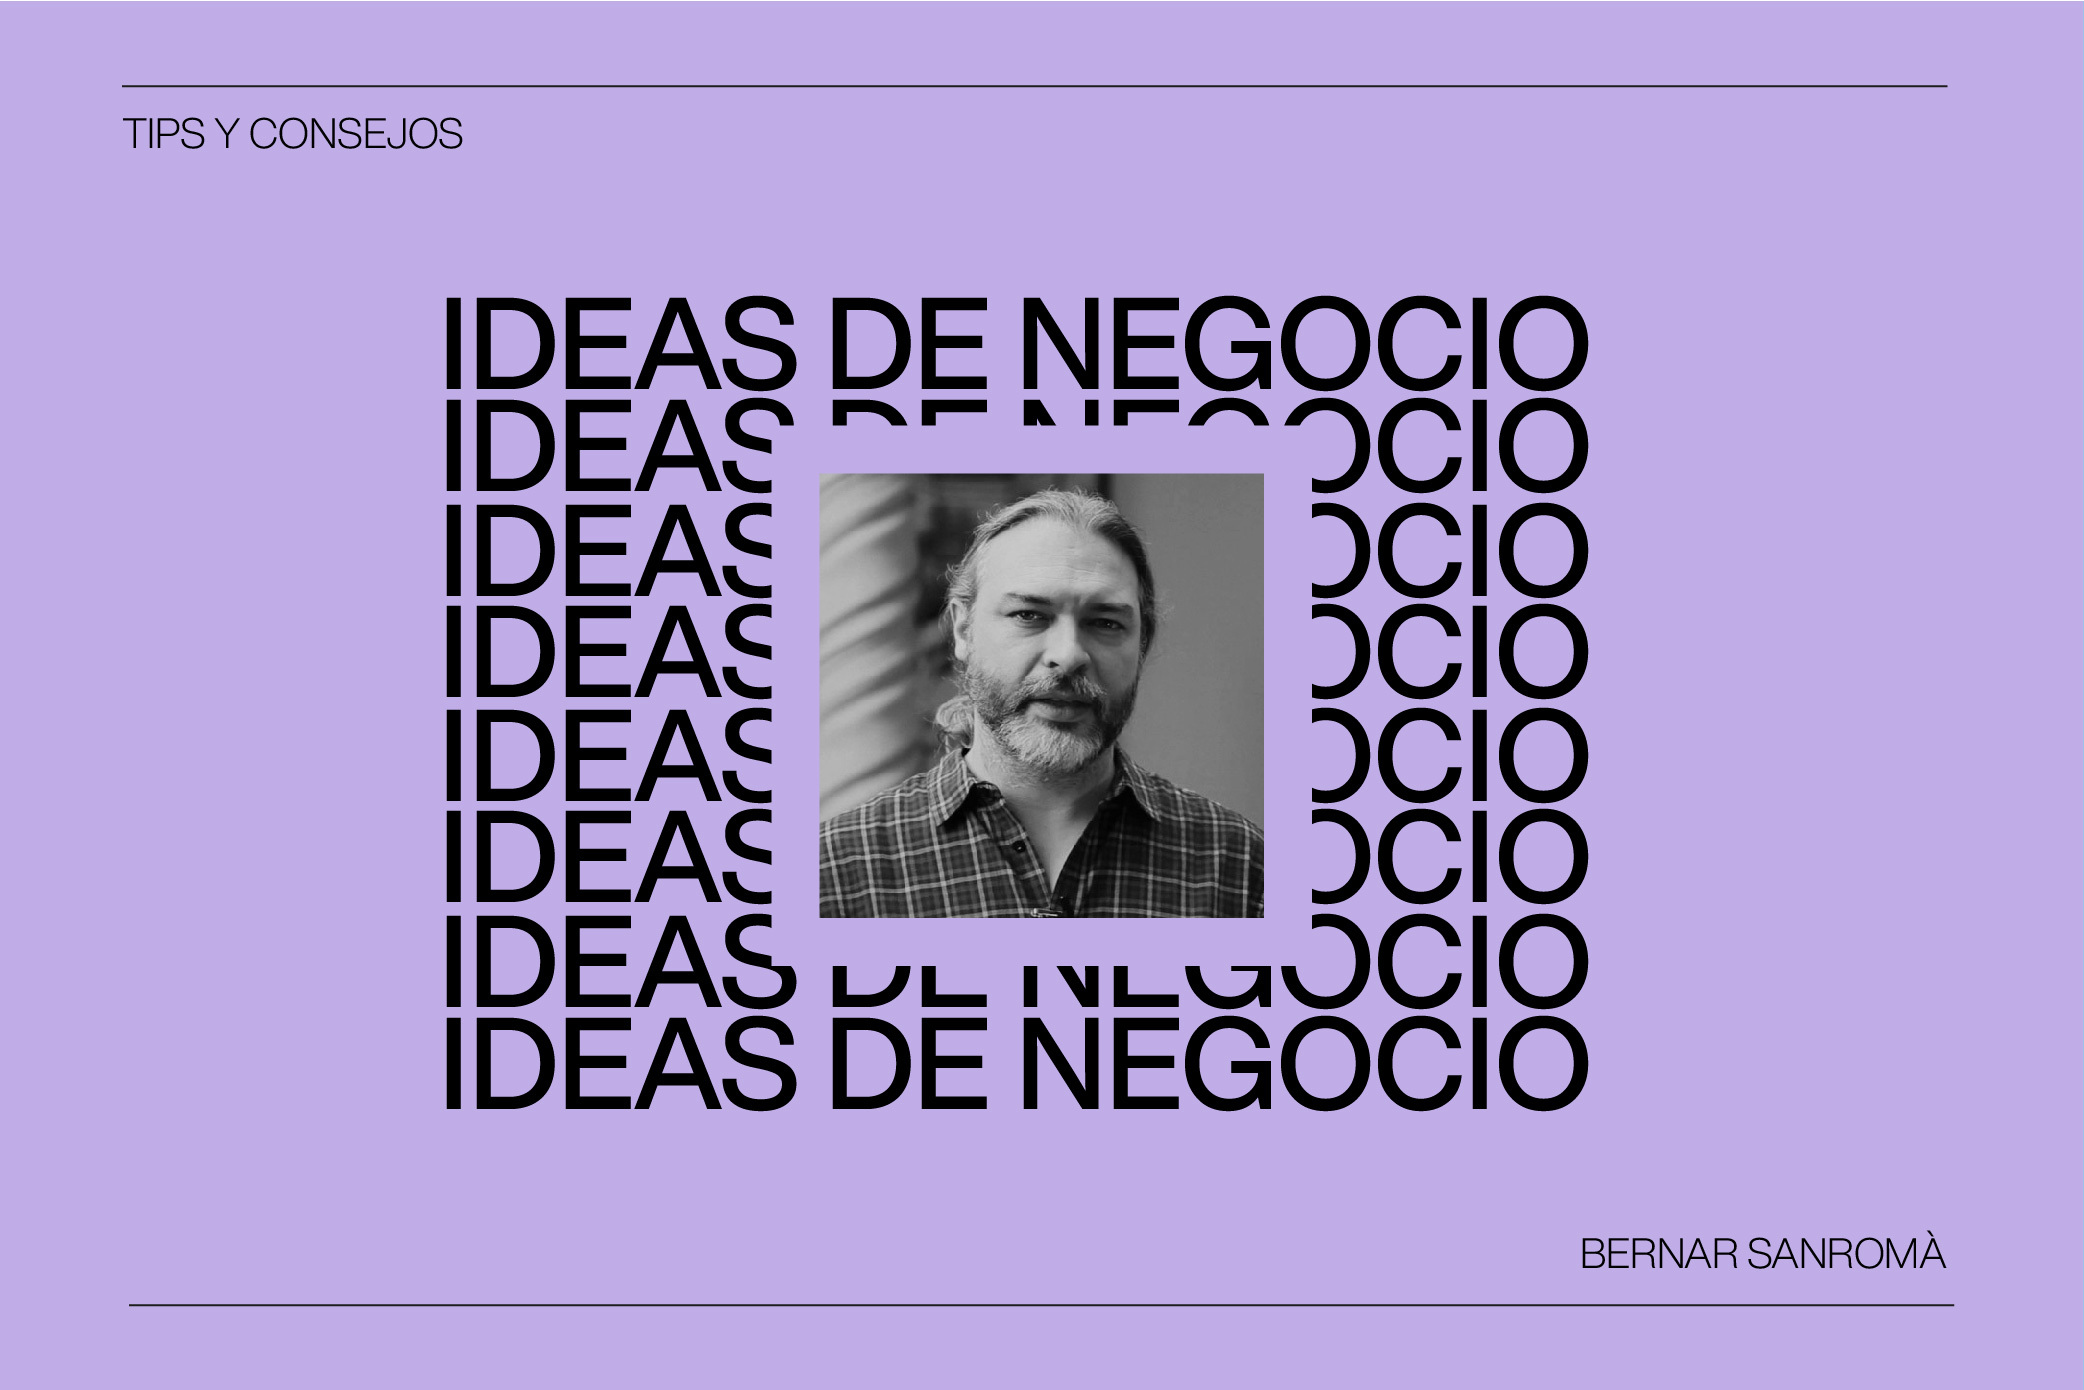 Ideas de Negocio en el Mundo Creativo con Bernat Sanromá, Consultor Estratégico de Marcas y Startups